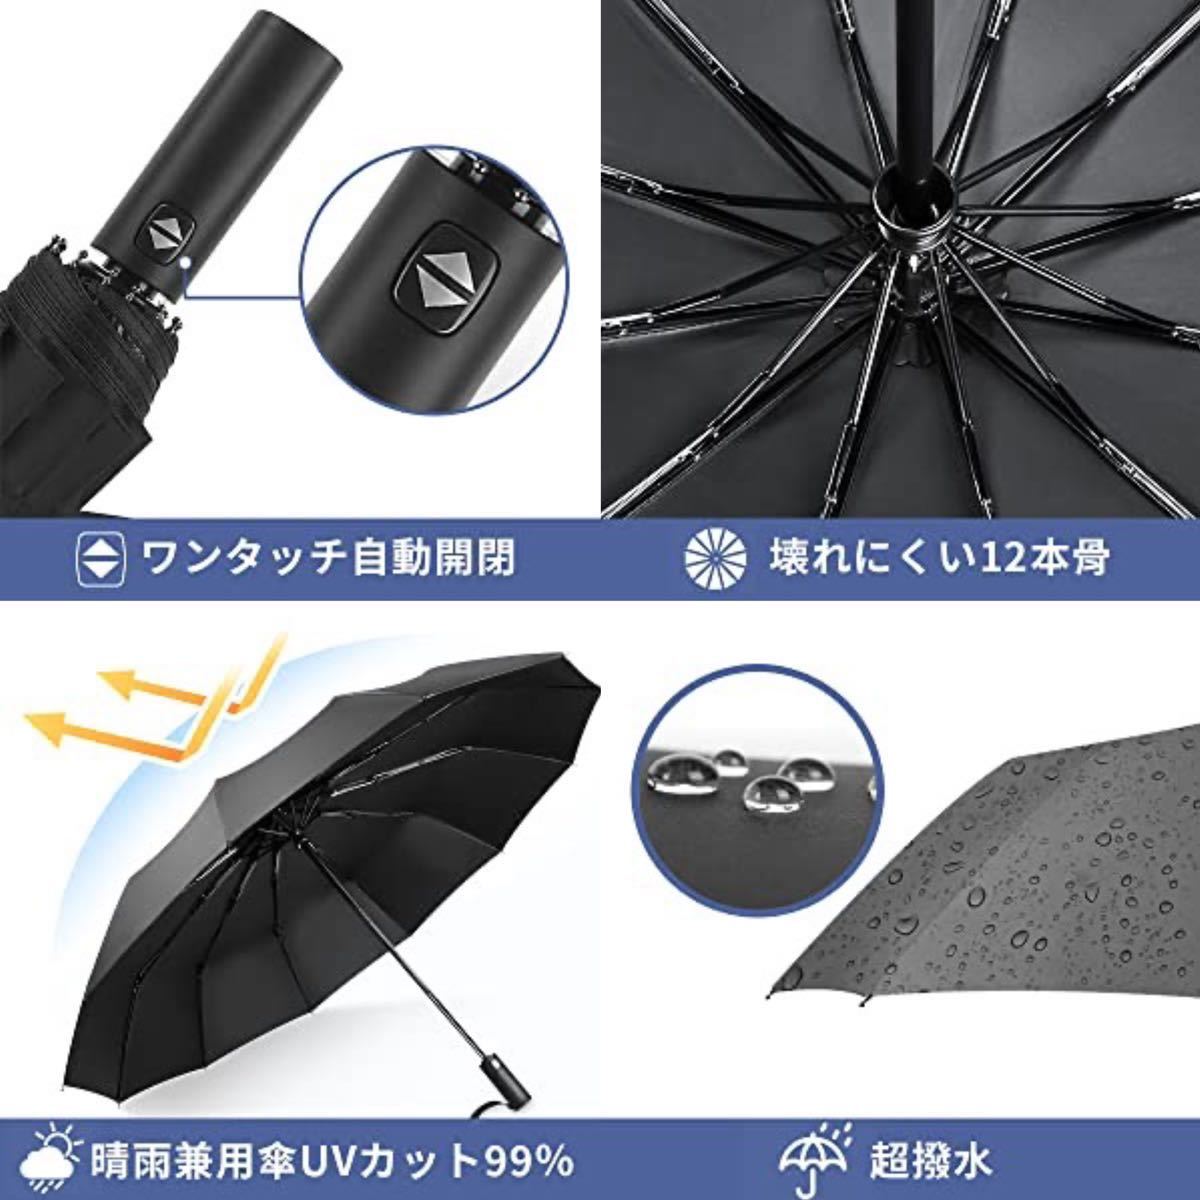 折りたたみ傘 ワンタッチ 折り畳み傘 自動開閉 メンズ 12本骨 大きい 台風対応 梅雨対策 耐強風 超撥水 晴雨兼用 UVカット ビッグサイズ